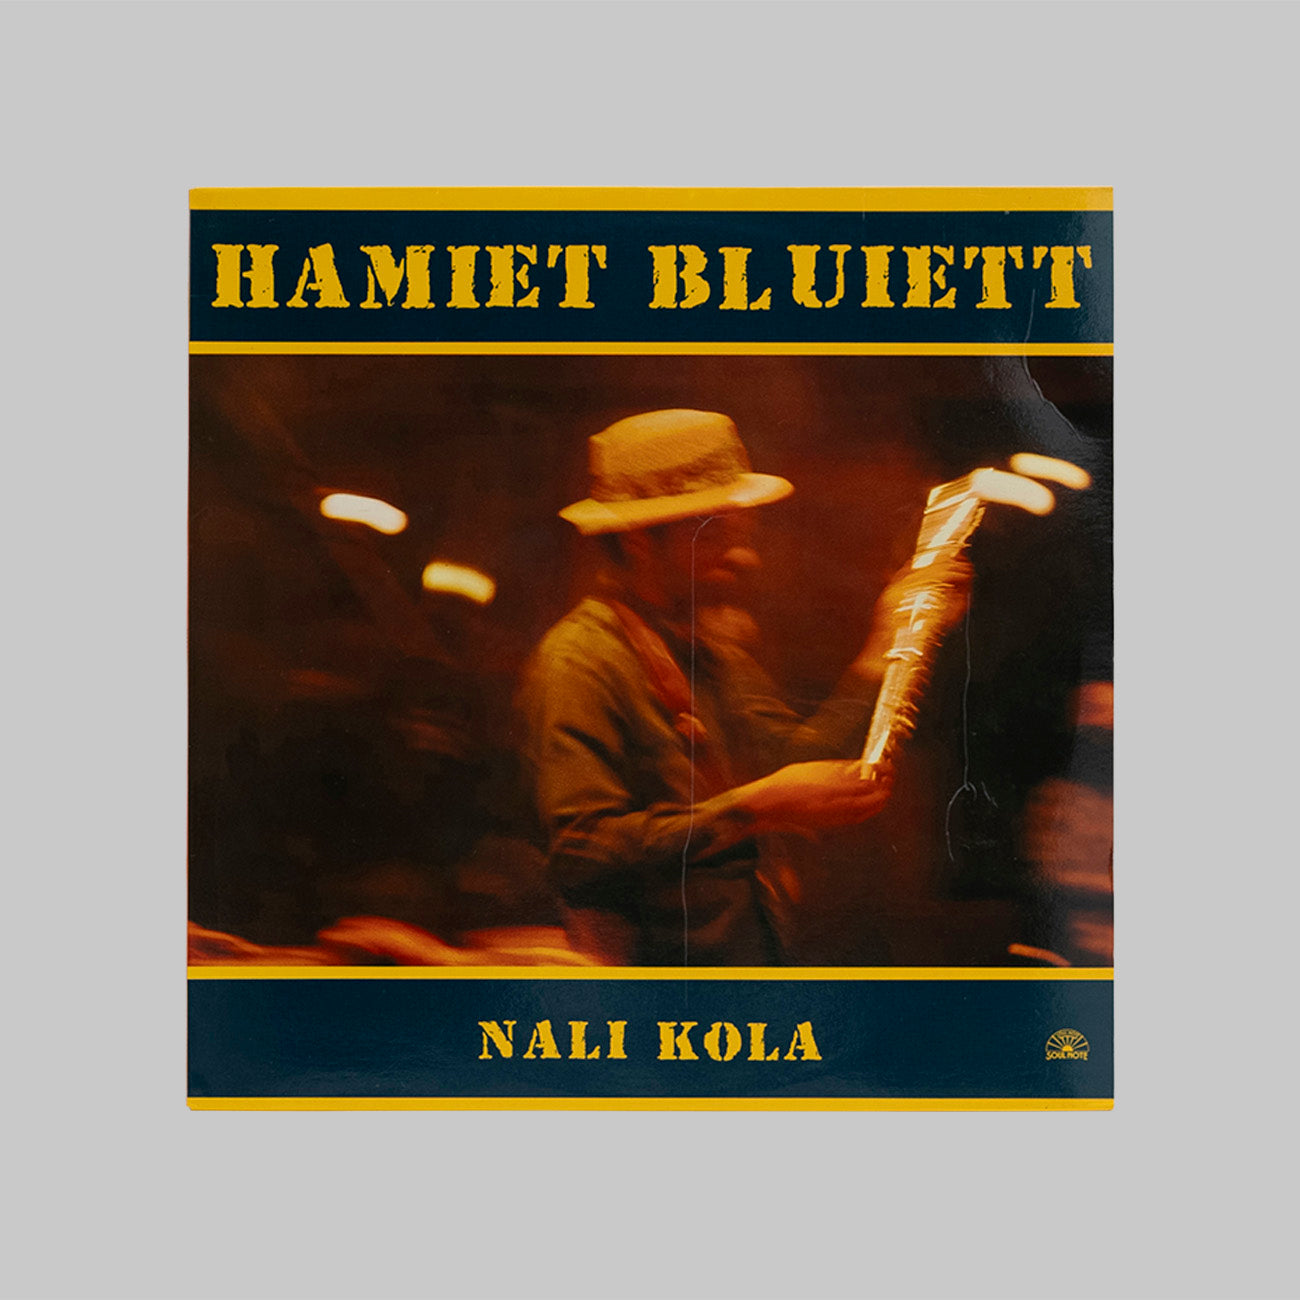 HAMIET BLUIETT / NALI KOLA